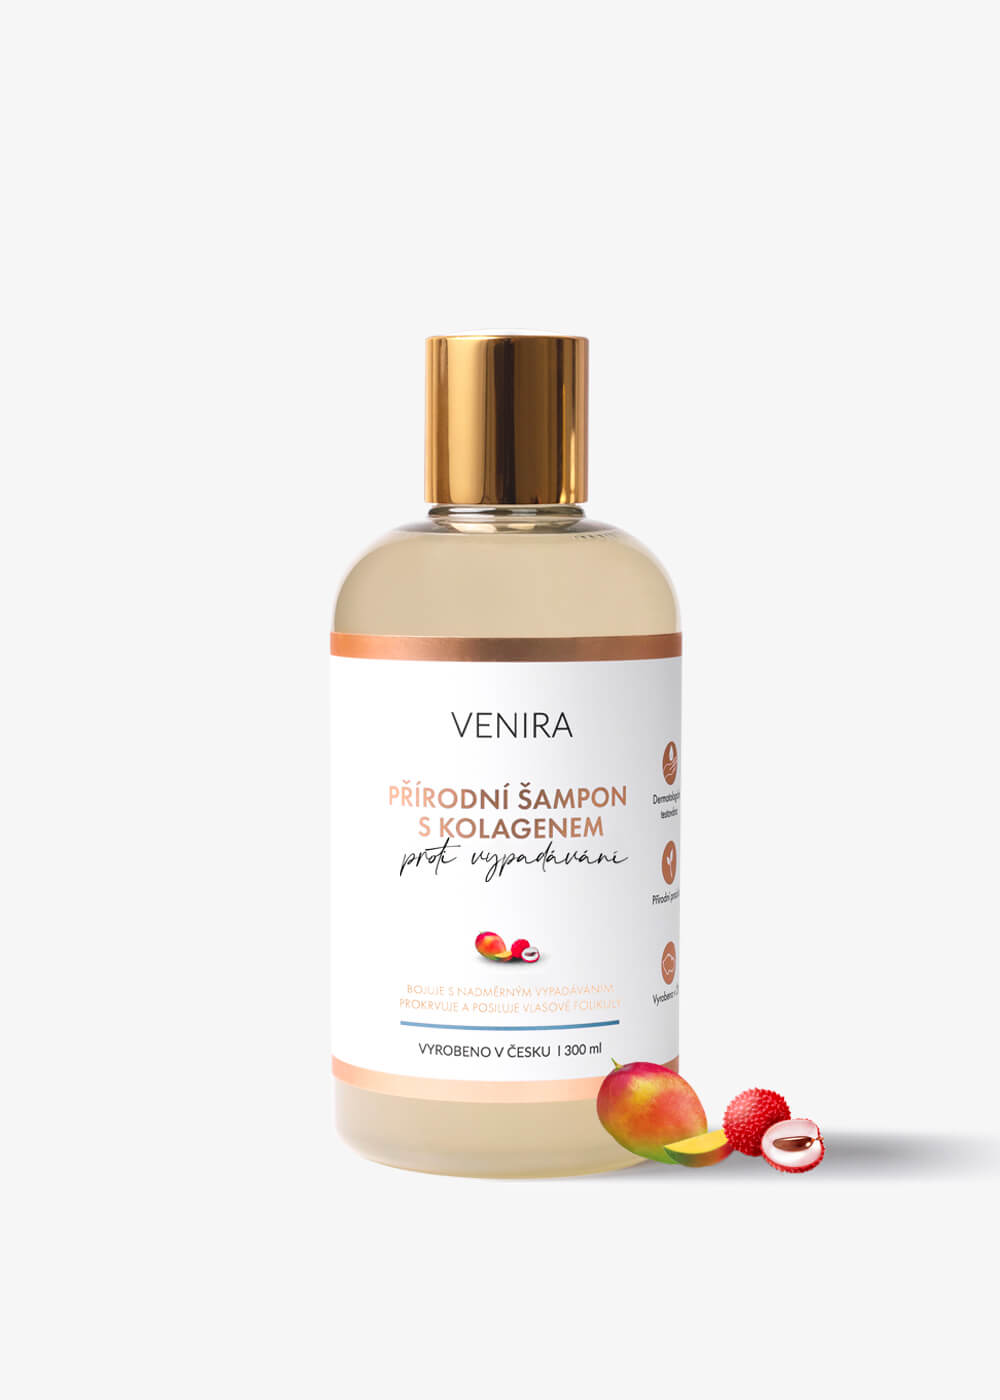 VENIRA přírodní šampon s kolagenem proti vypadávání vlasů, mango-liči, 300 ml